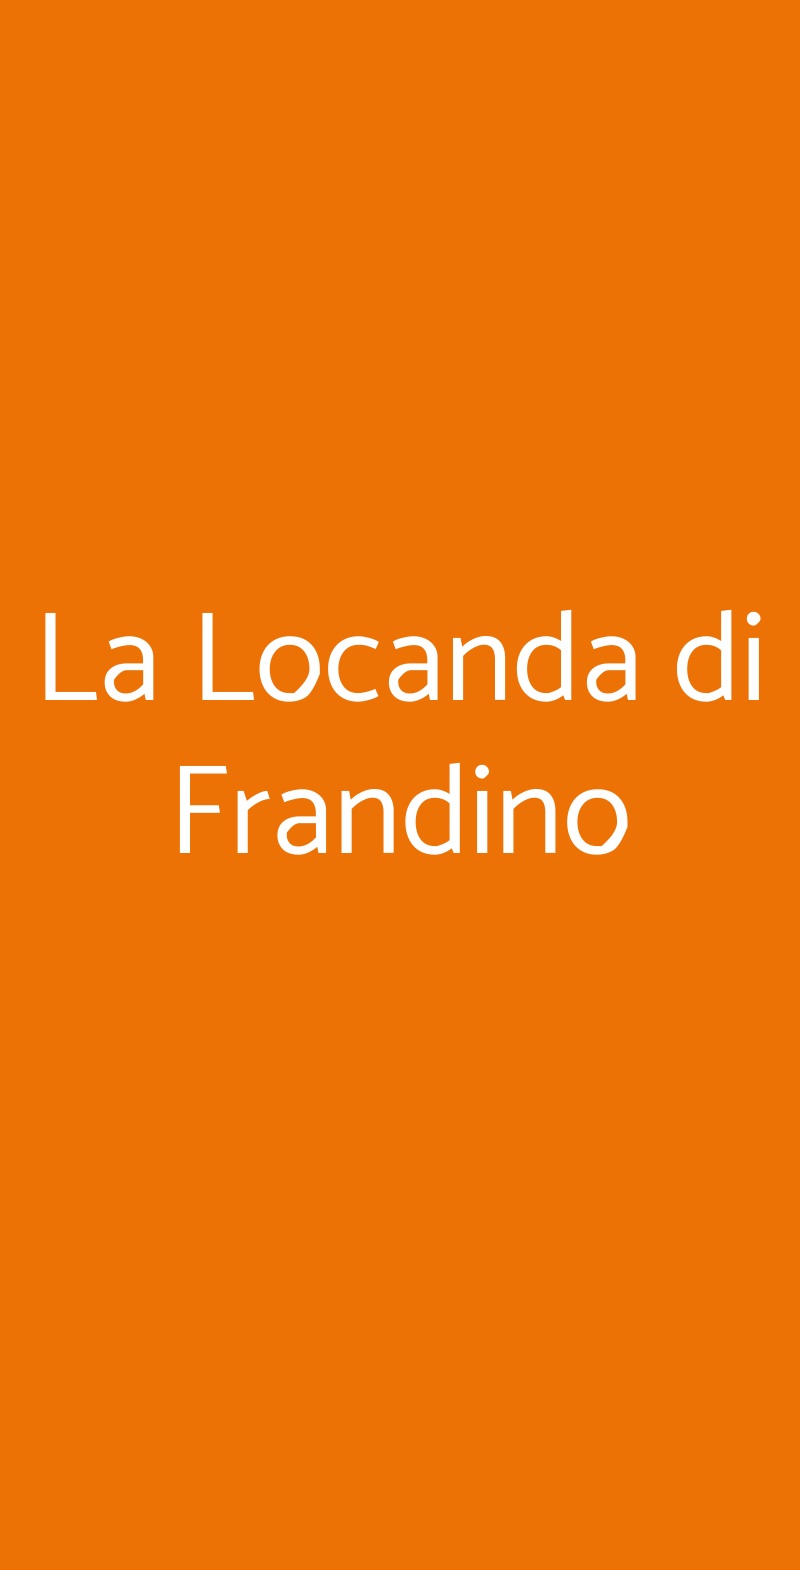 La Locanda di Frandino Cottanello menù 1 pagina